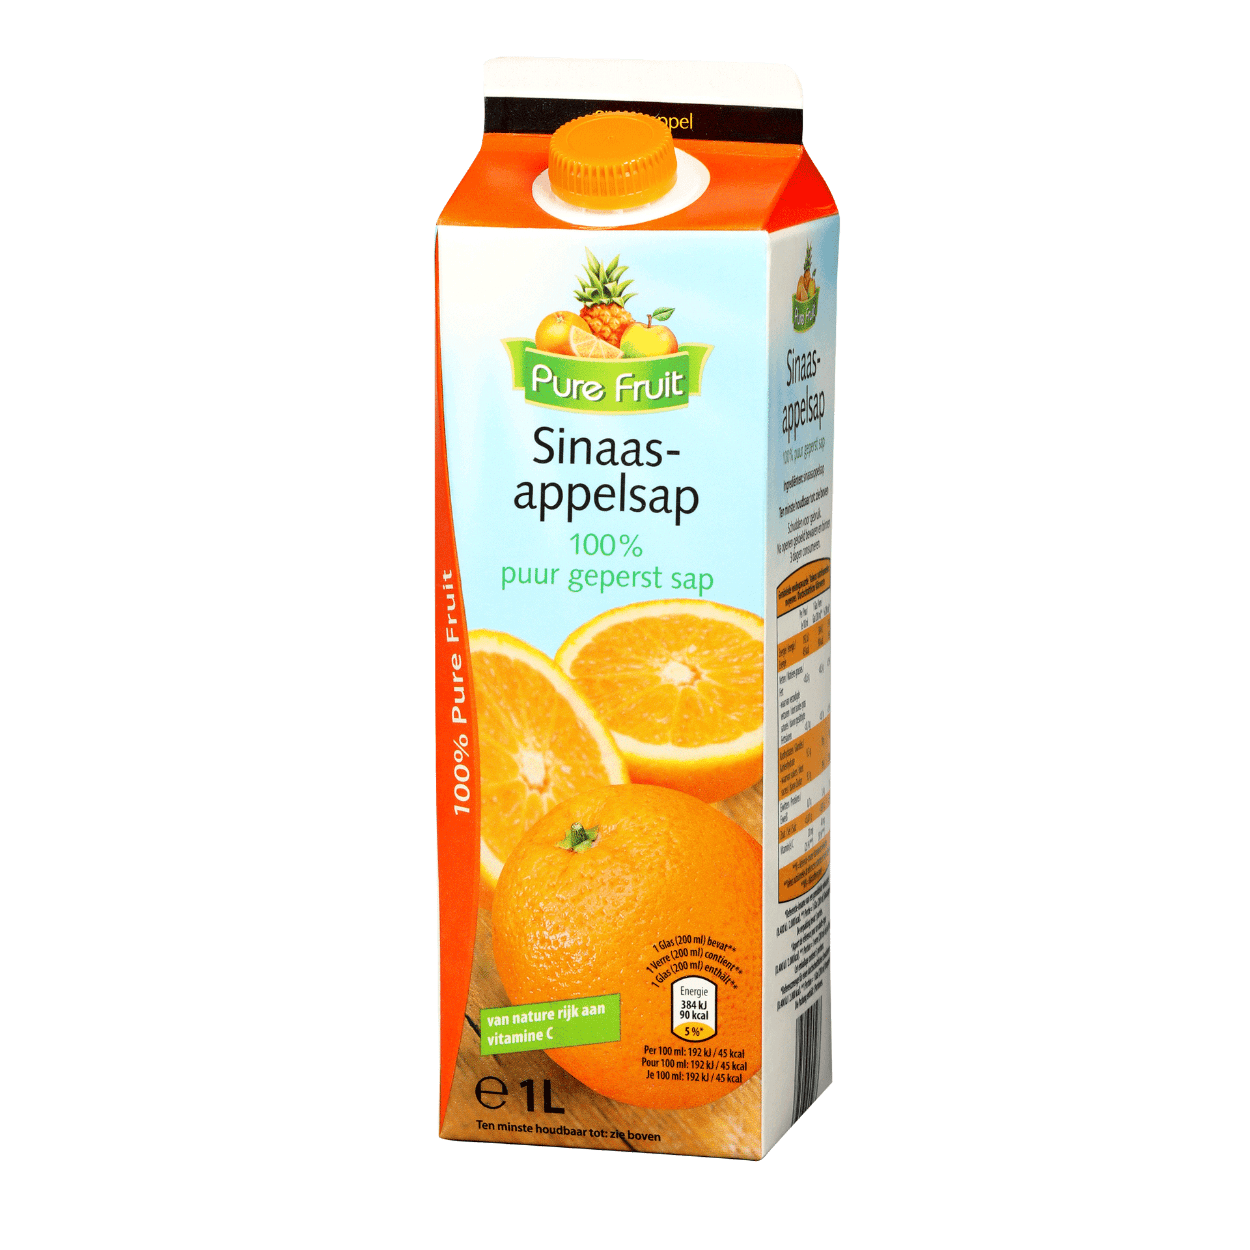 Premium sinaasappelsap kopen bij ALDI